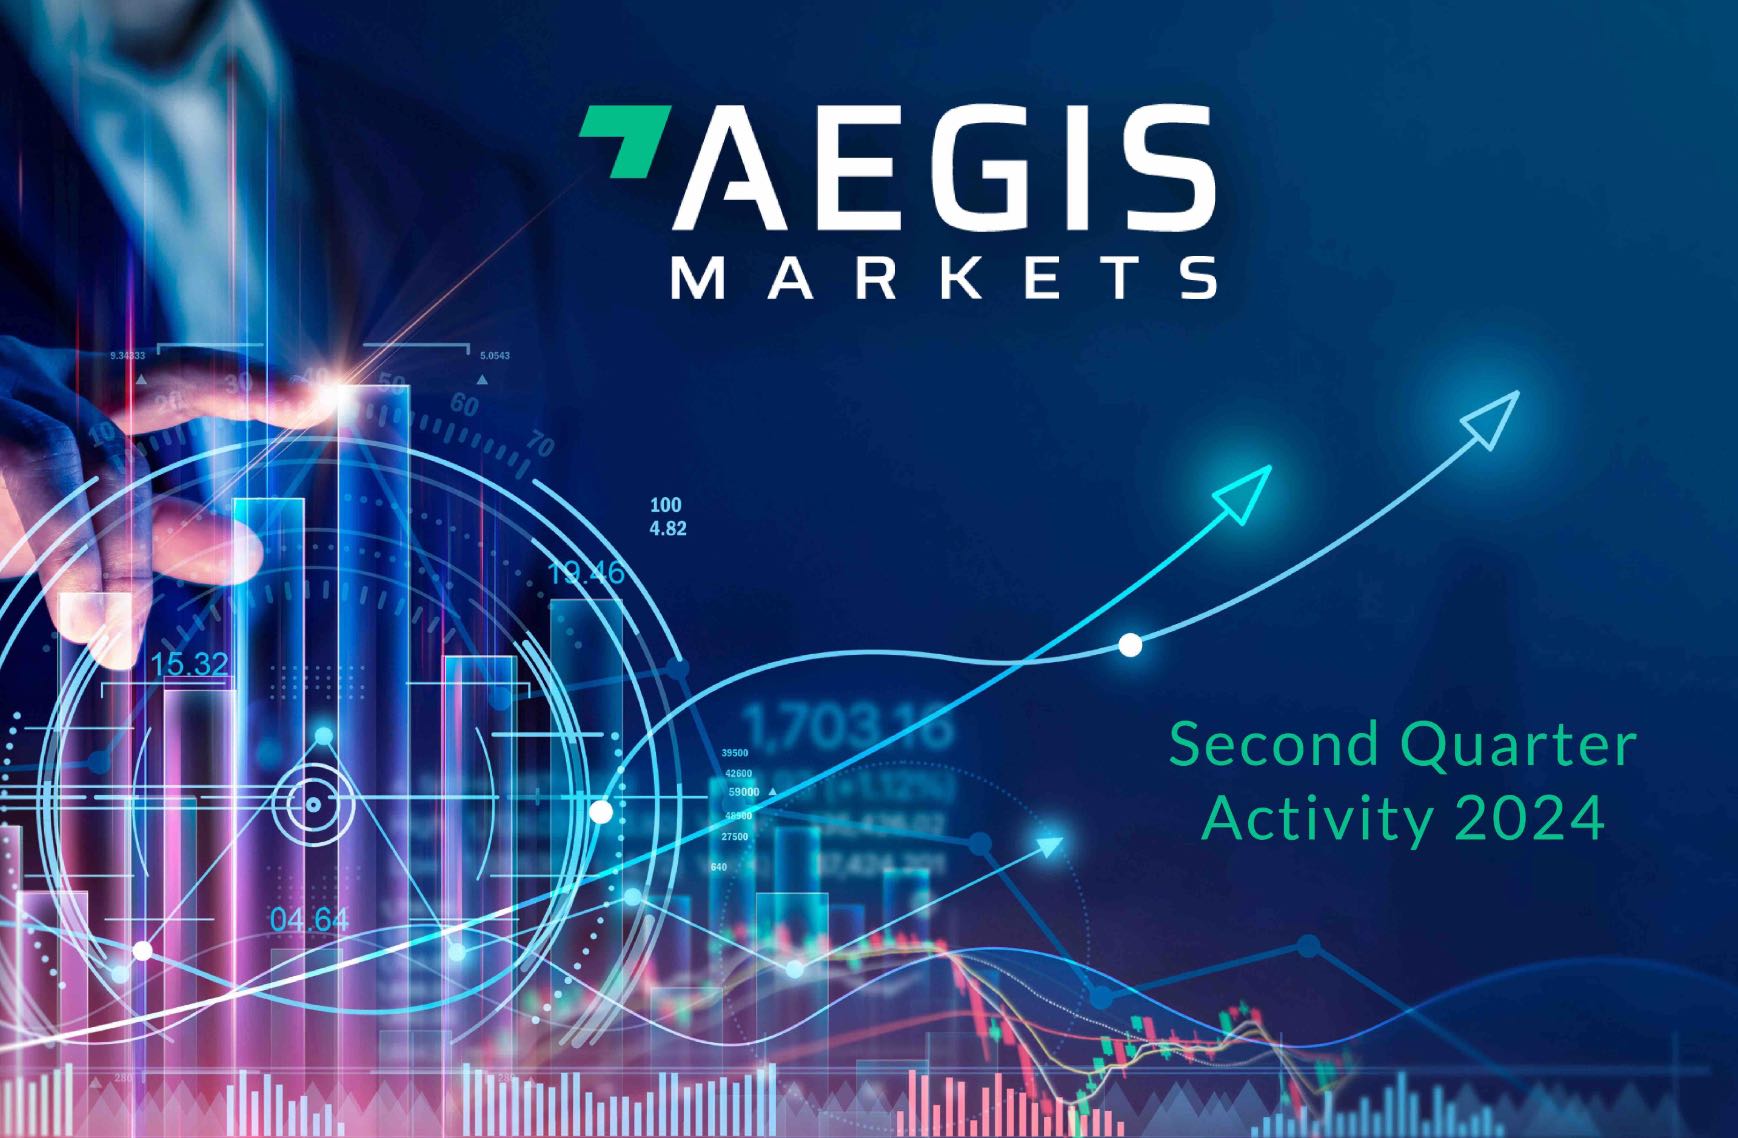 Latest news - AEGIS Markets -Achieves Multiple Volume Milestones